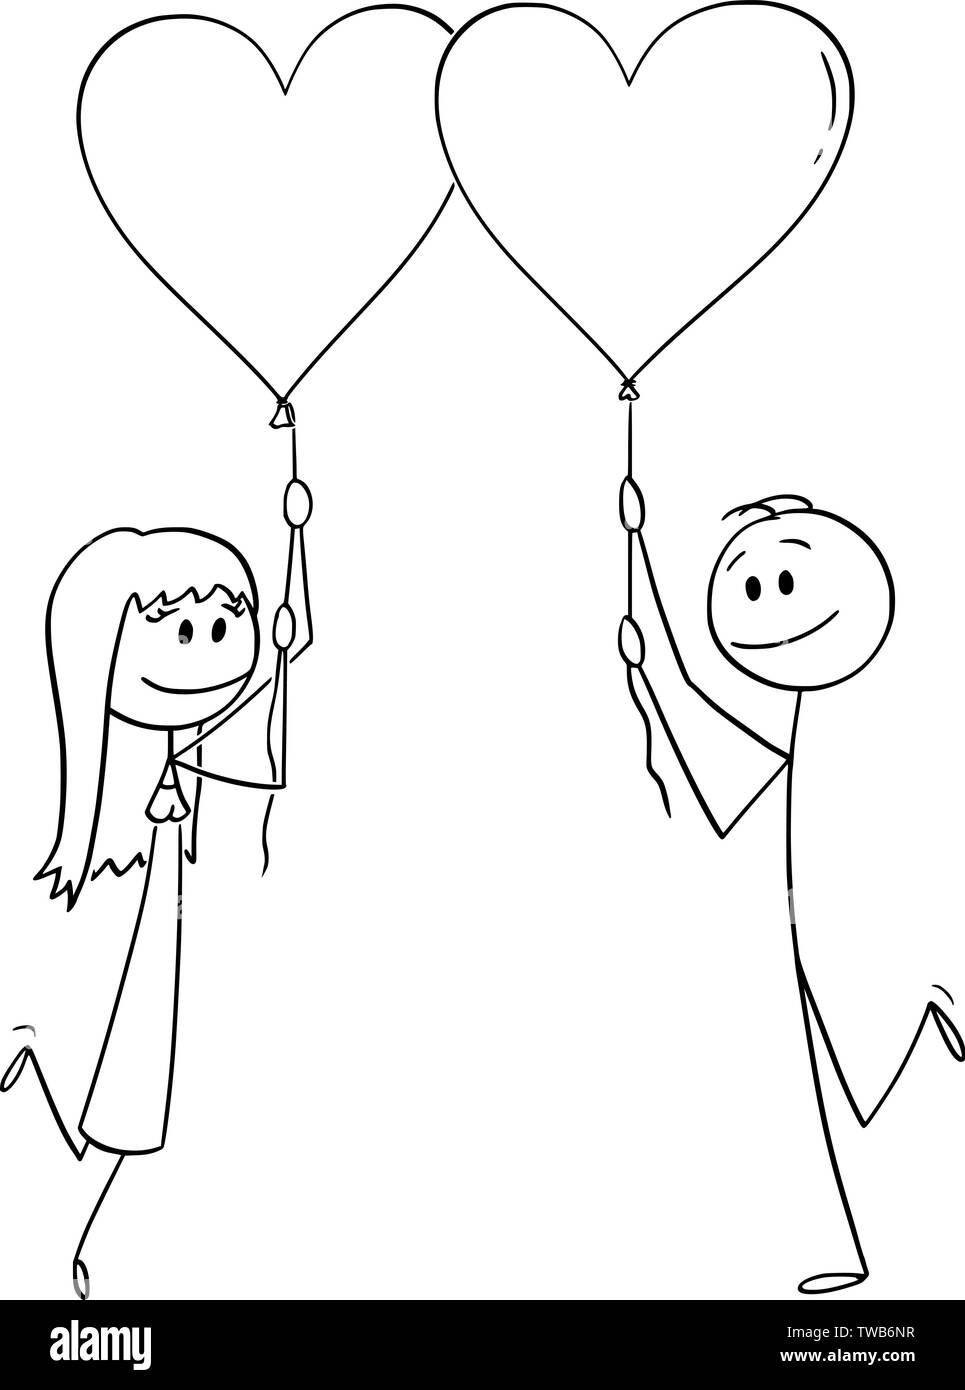 Vektor cartoon Strichmännchen Zeichnen konzeptionelle Darstellung der heterosexuellen Paaren von Mann und Frau auf Datum, herzförmige Luftballons und lächelnd. Stock Vektor